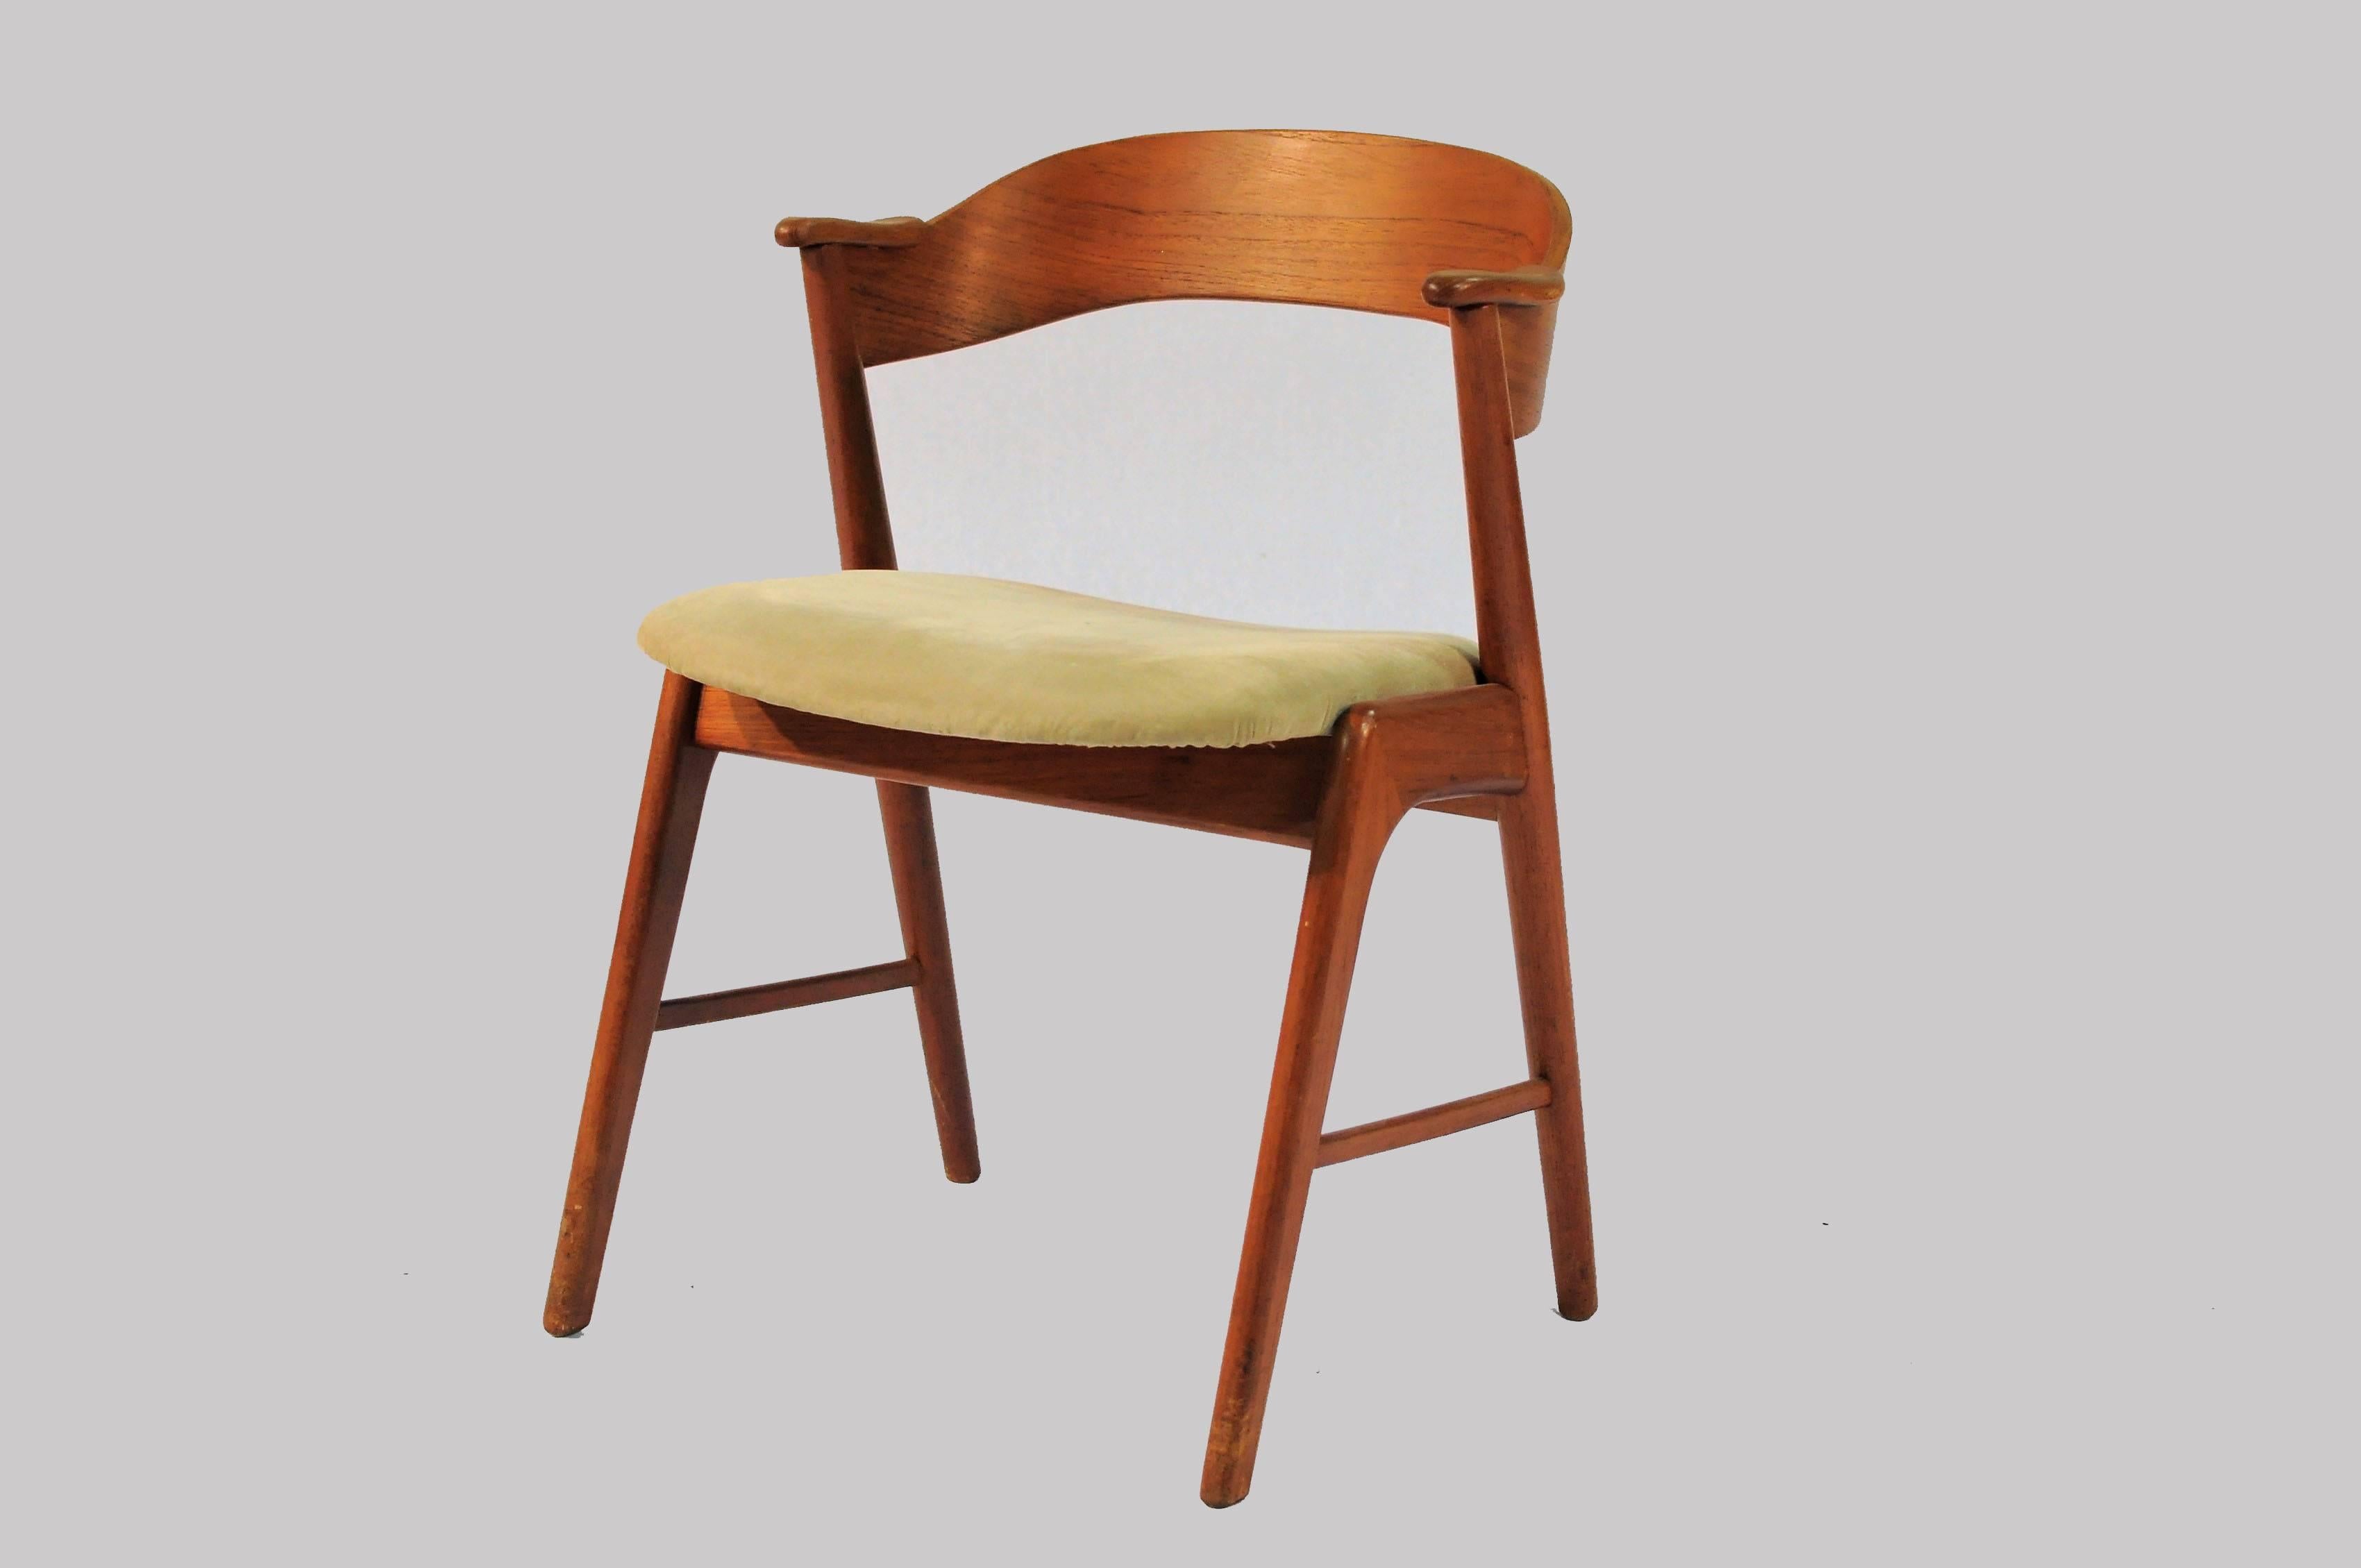 Sechser-Set dänischer Esszimmerstühle aus Teakholz mit geschwungenen Rückenlehnen und eleganten Gestellen, hergestellt von Korup Stolefabrik. Die Stühle sind gemeinhin als Modell 32 bekannt und werden von vielen Kai Kristiansen zugeschrieben -